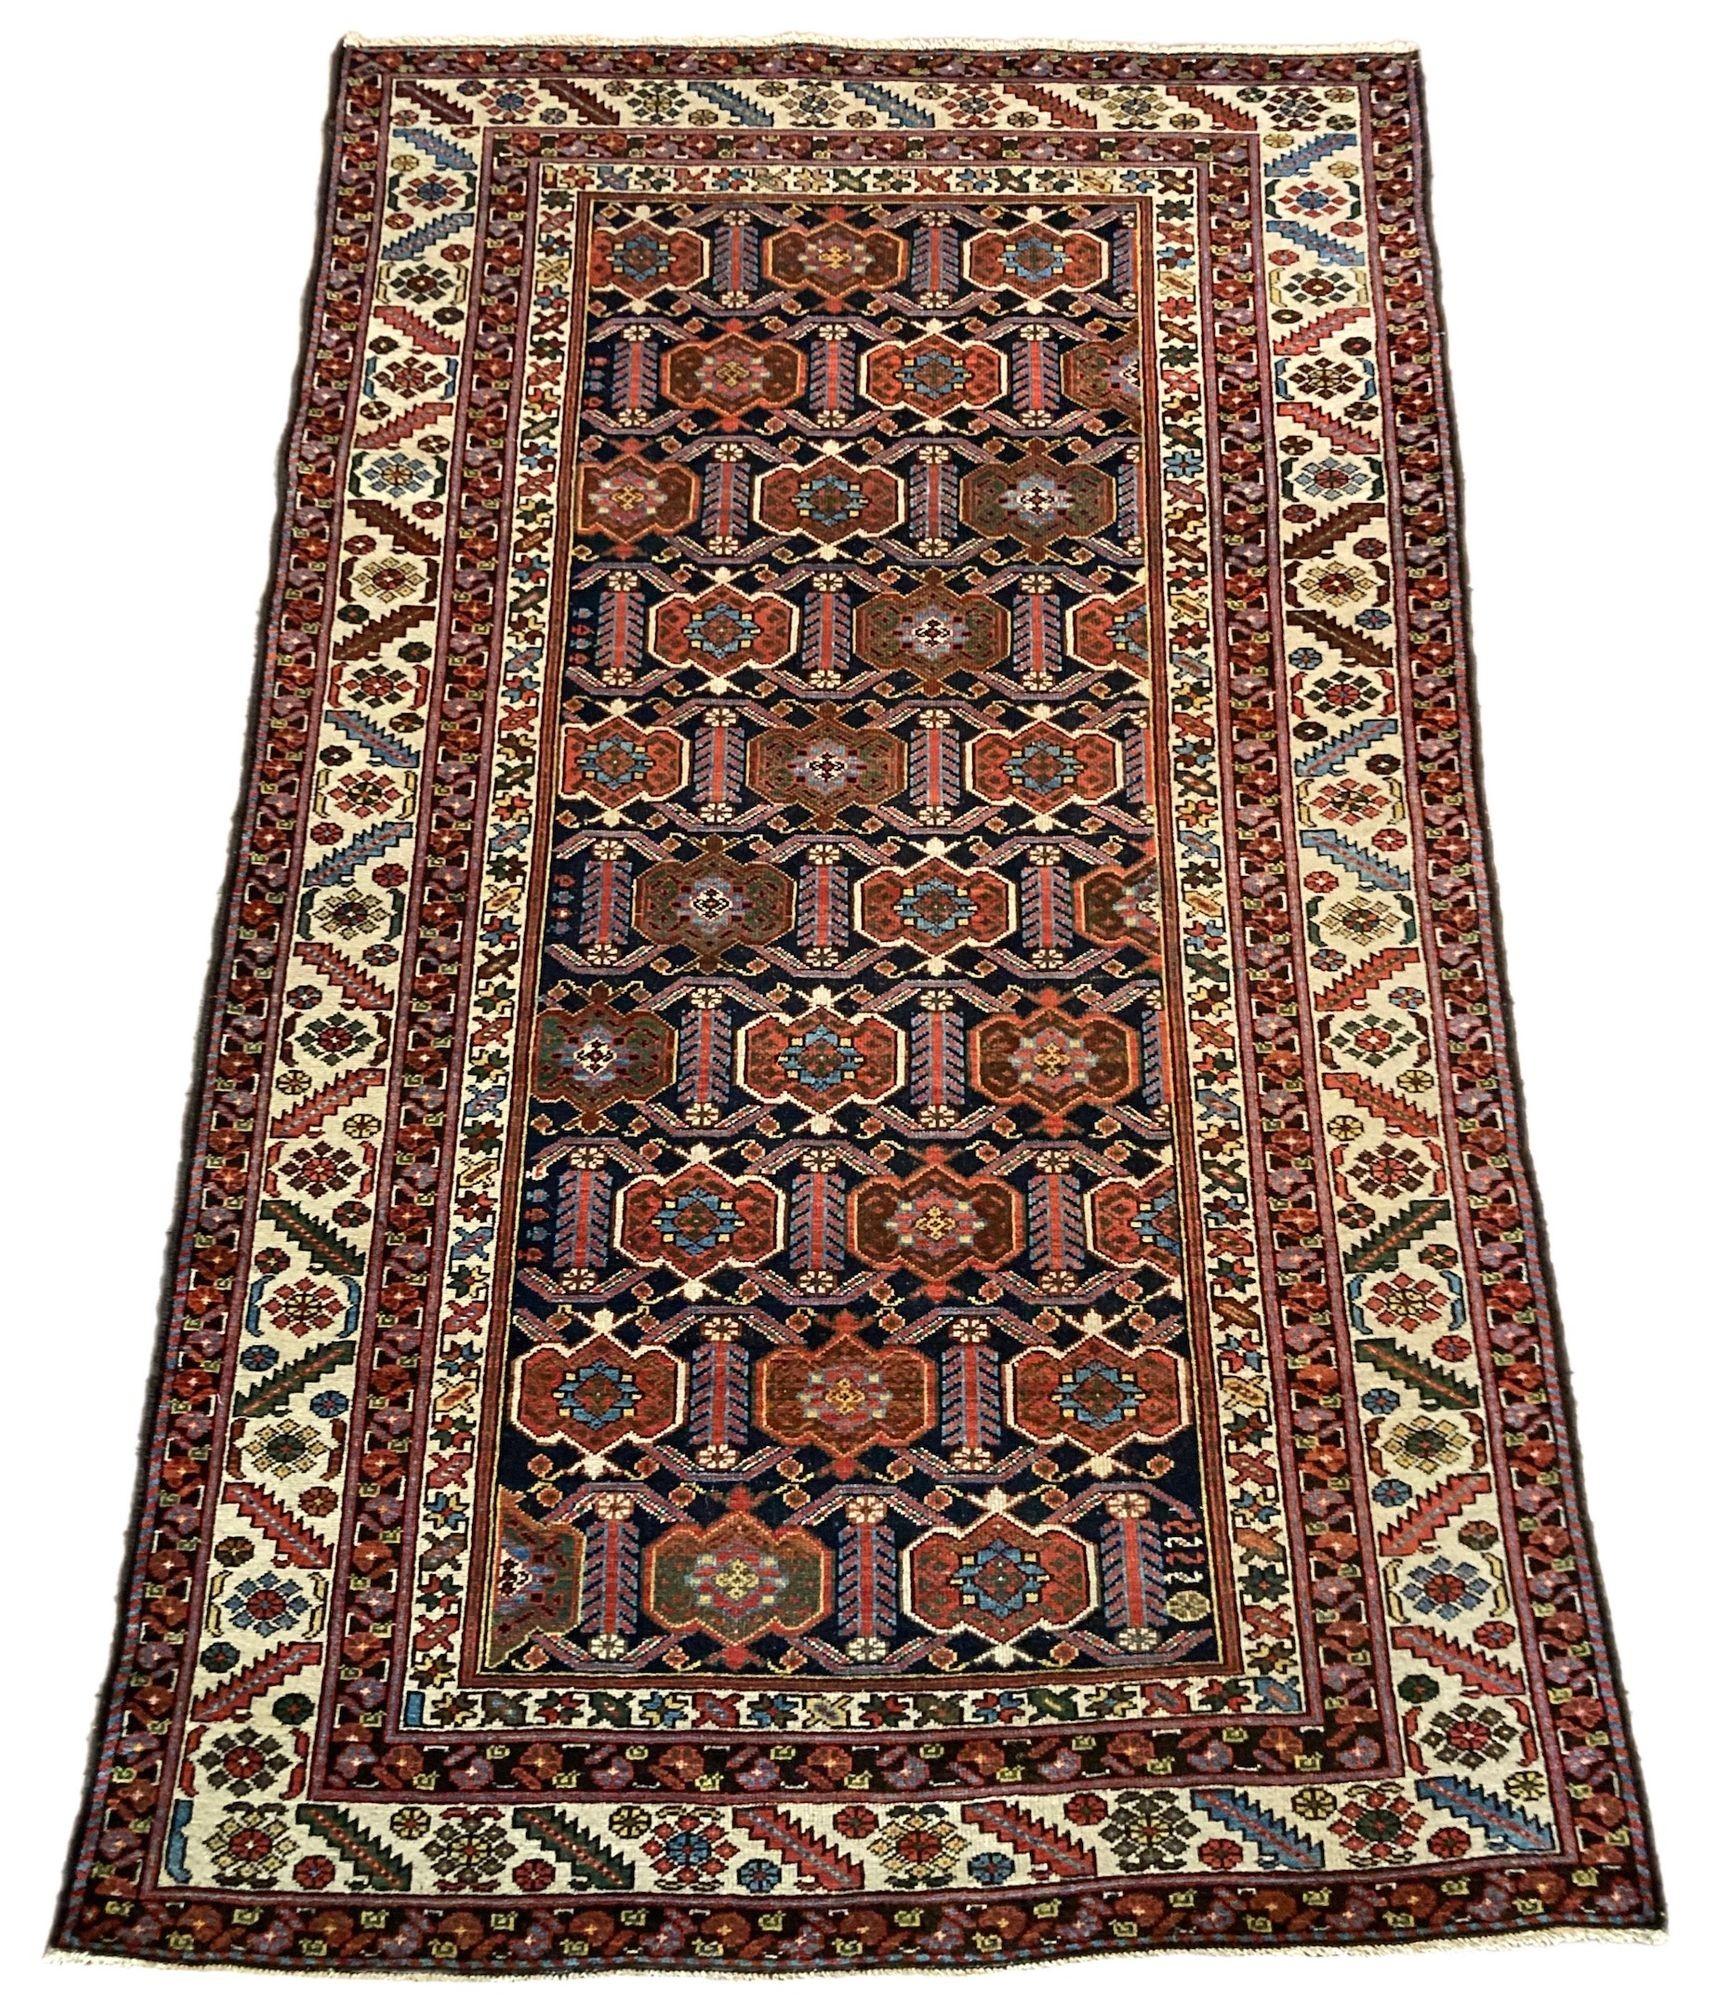 Ein schöner antiker Mazlagan-Teppich, handgewebt um 1900, mit einem Allover-Muster aus stilisierten Blumen auf einem tiefen indigoblauen Feld und einer elfenbeinfarbenen Bordüre. Einige sehr interessante Designelemente und fabelhafte Sekundärfarben